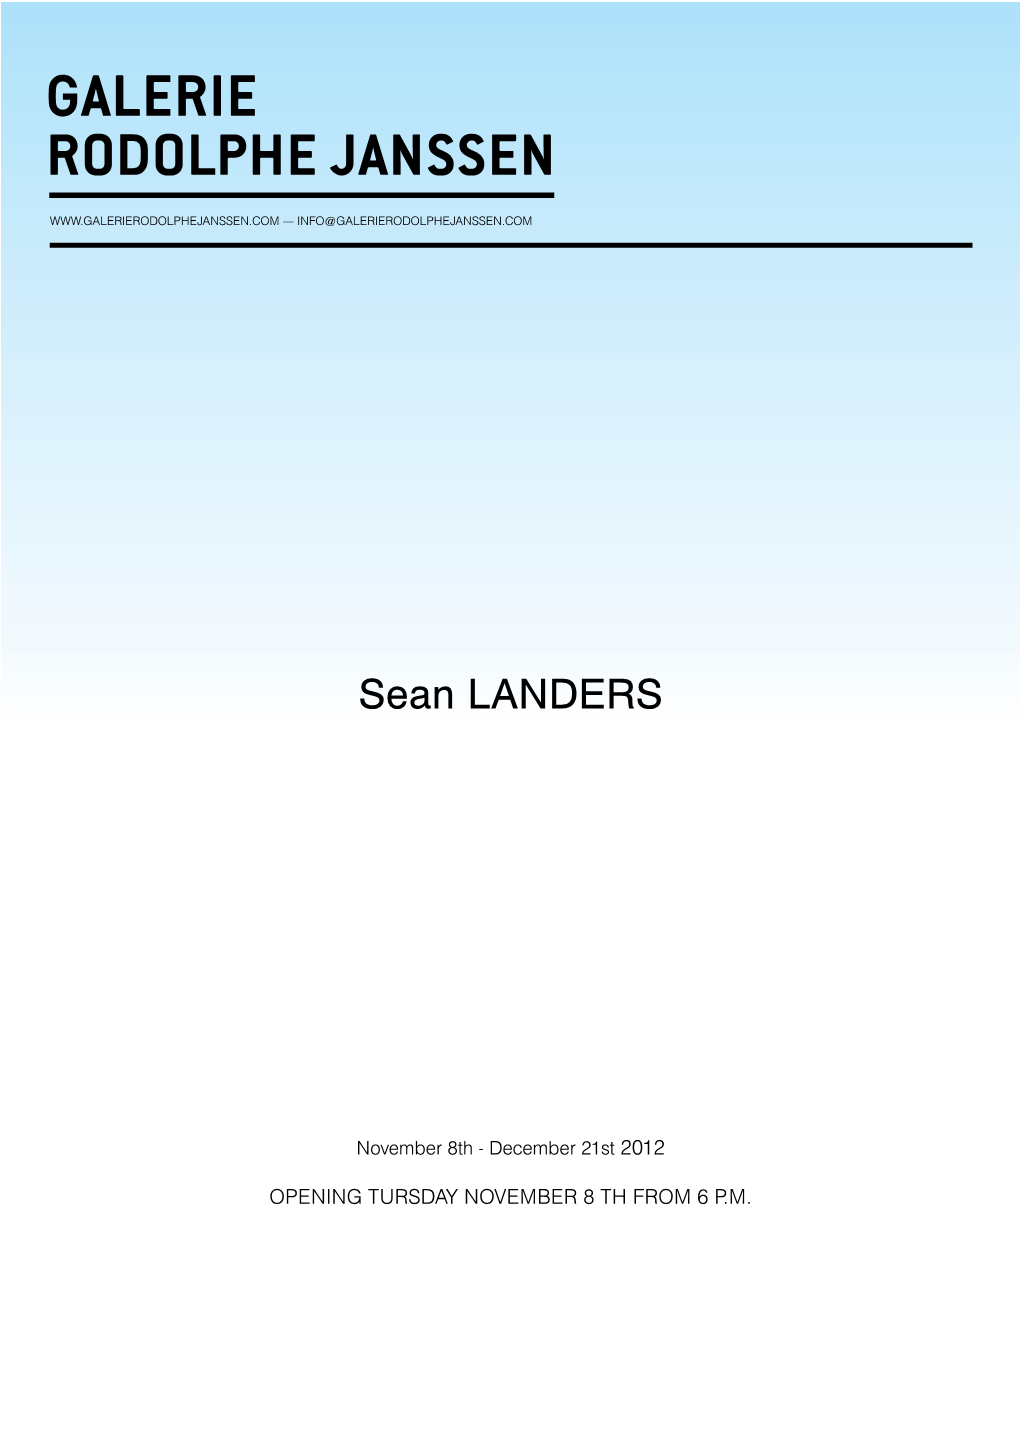 Sean LANDERS